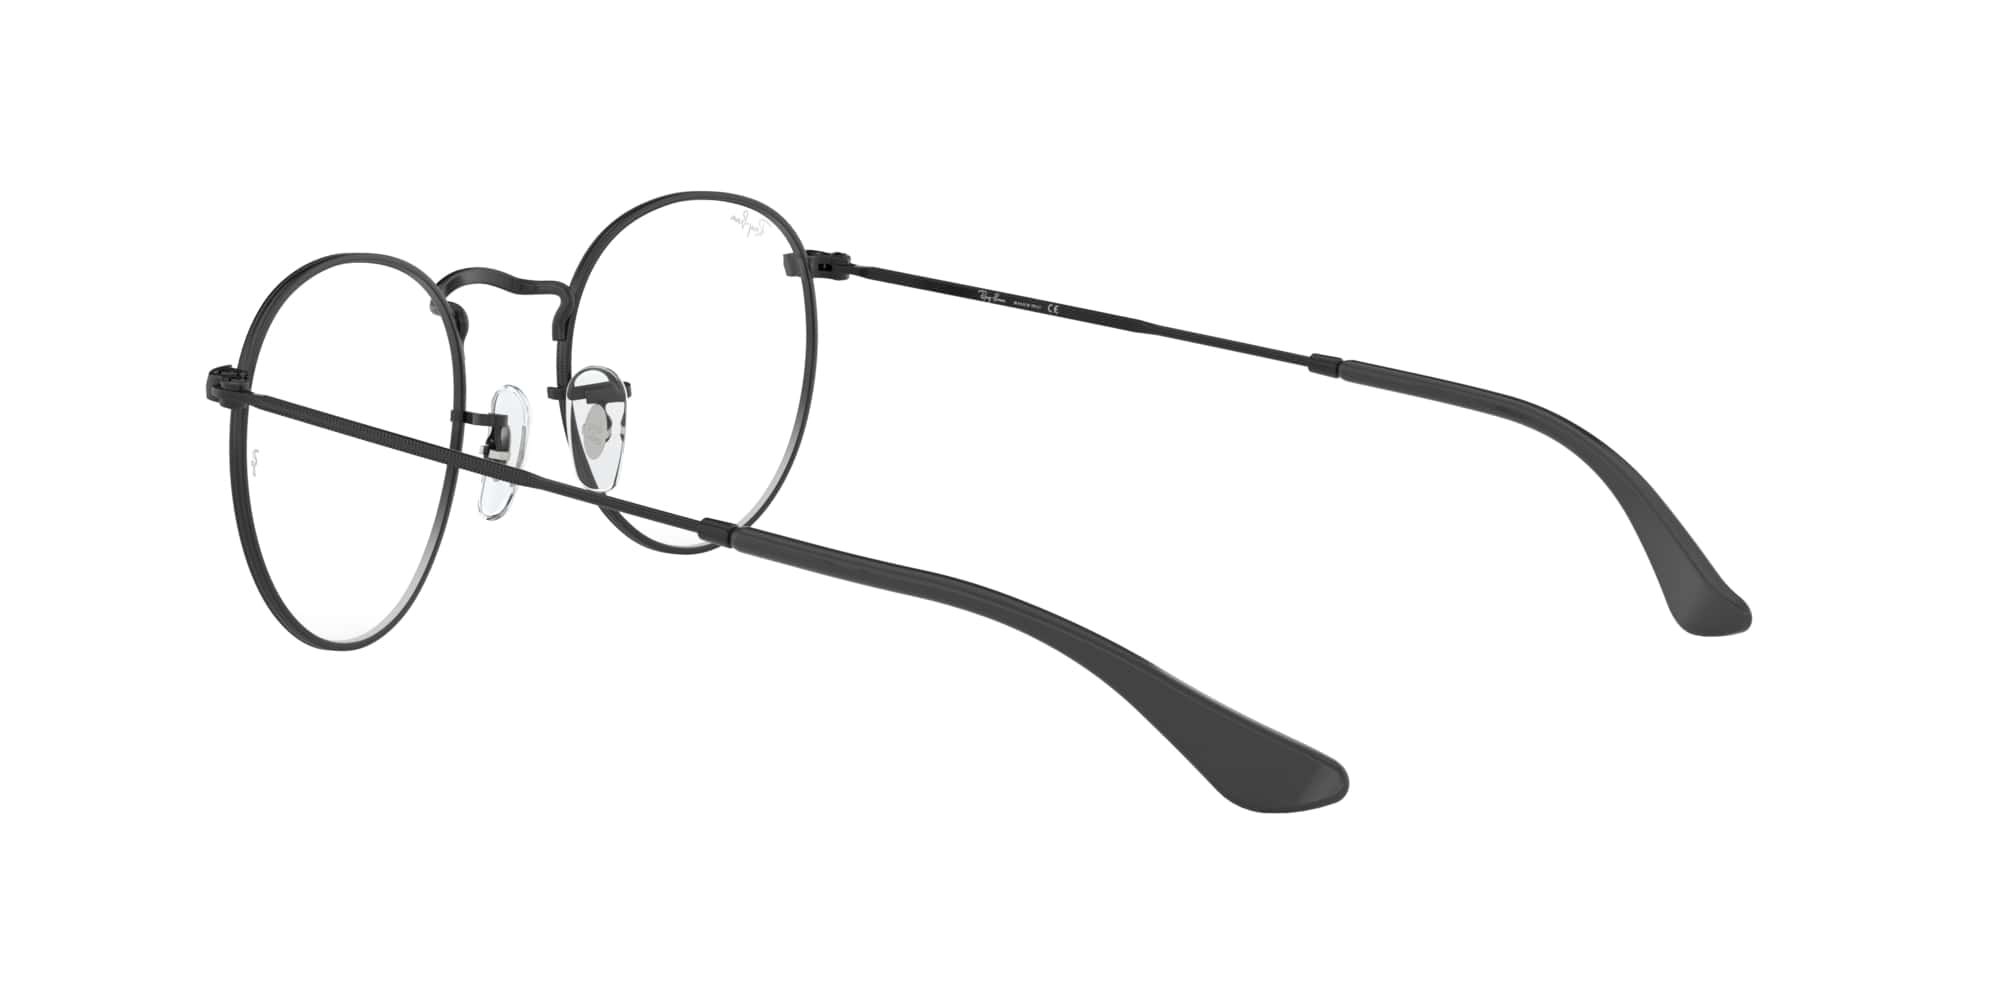 Das Bild zeigt die Korrektionsbrille RX3447V 2503 von der Marke Ray Ban in grau.